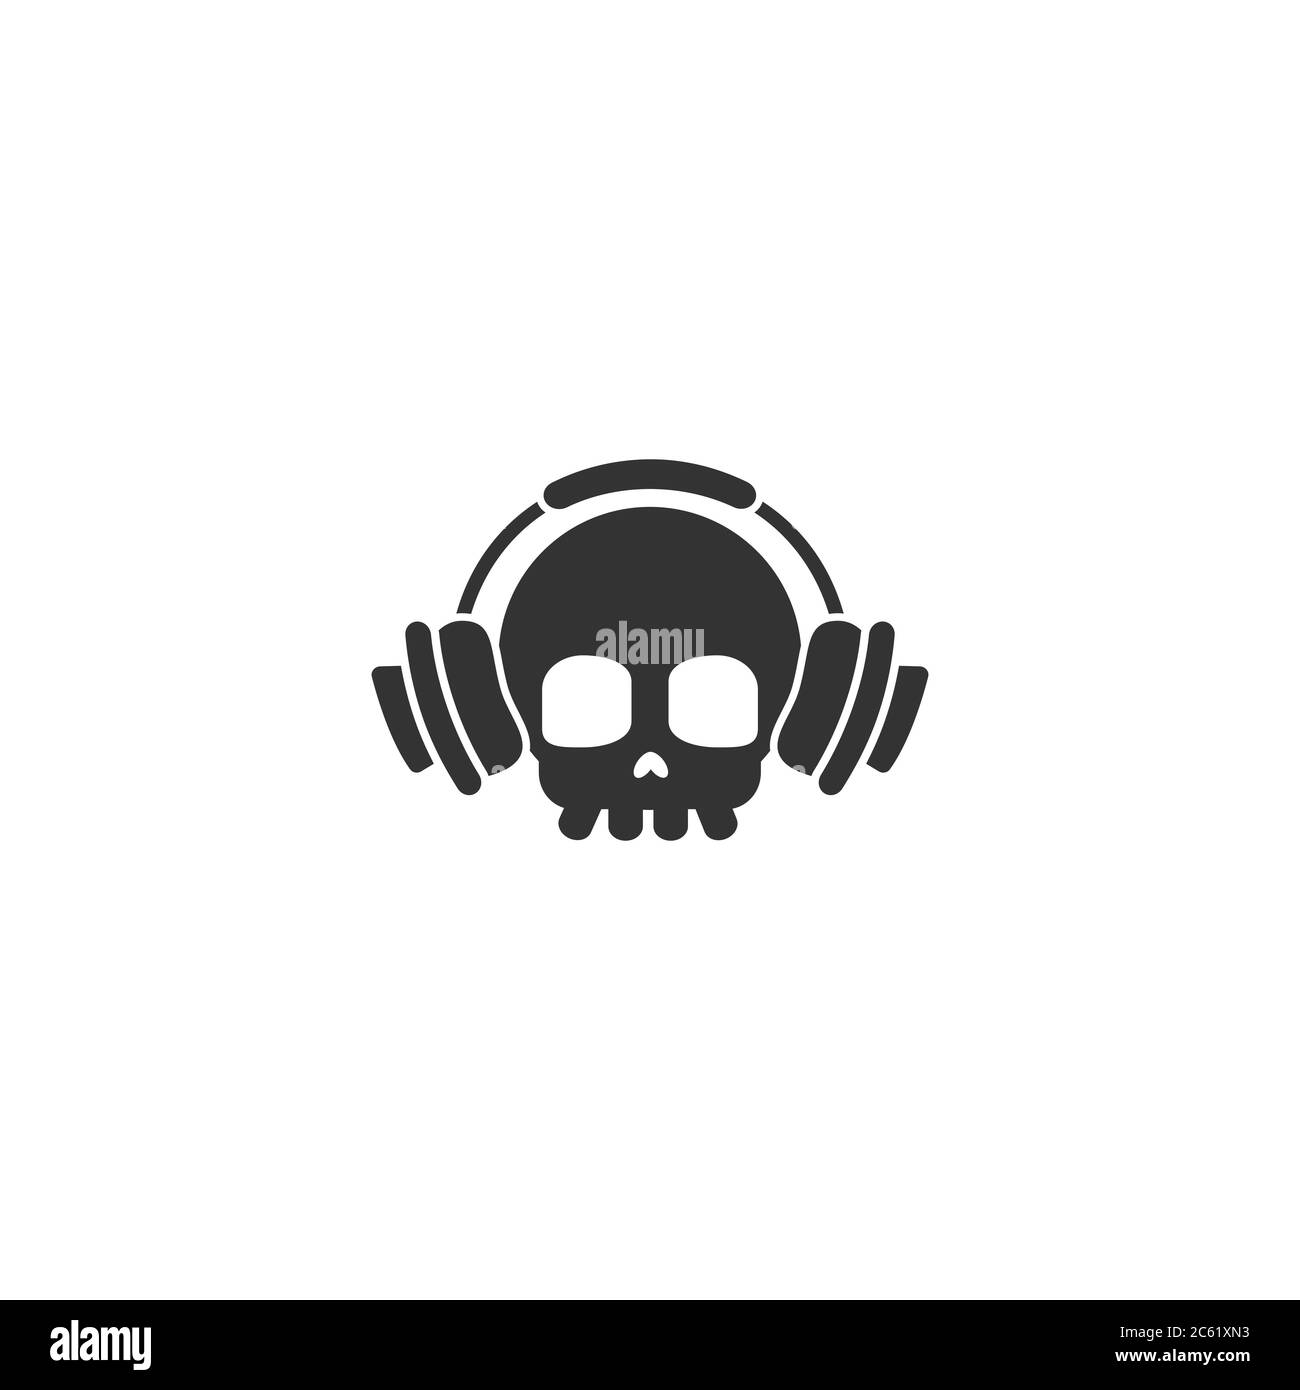 Cranio con cuffie. Logo Rock Music. Suoni di pericolo. Stampa accattivante per la felpa. Cranio umano bianco e nero. Illustrazione Vettoriale